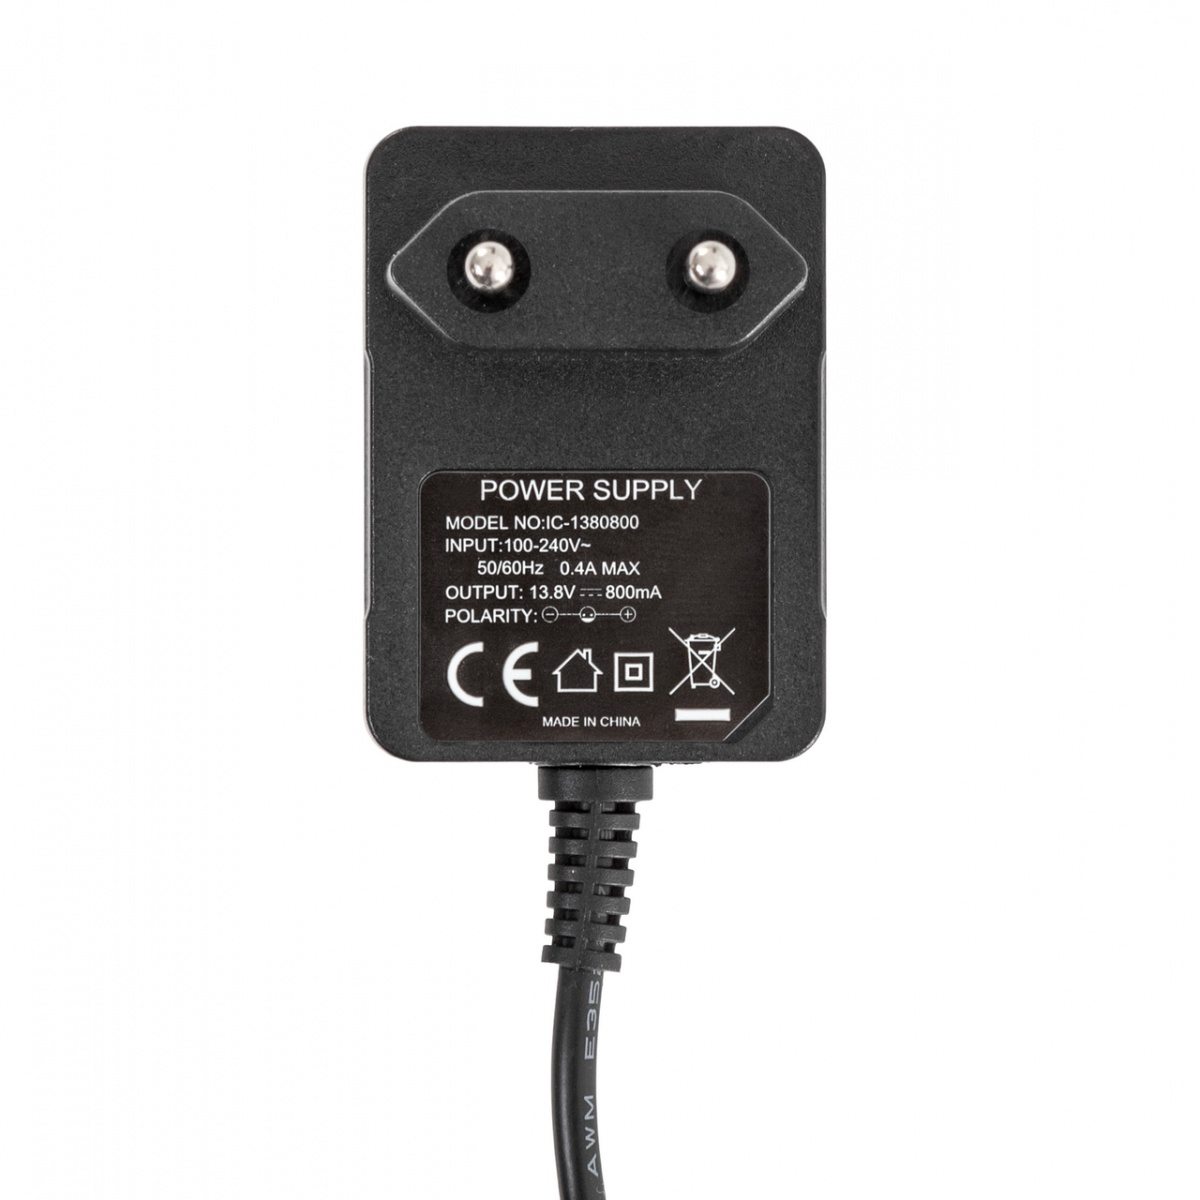 Hálózati adapter, 230/13,8 V, AKO villanypásztor készülékekhez